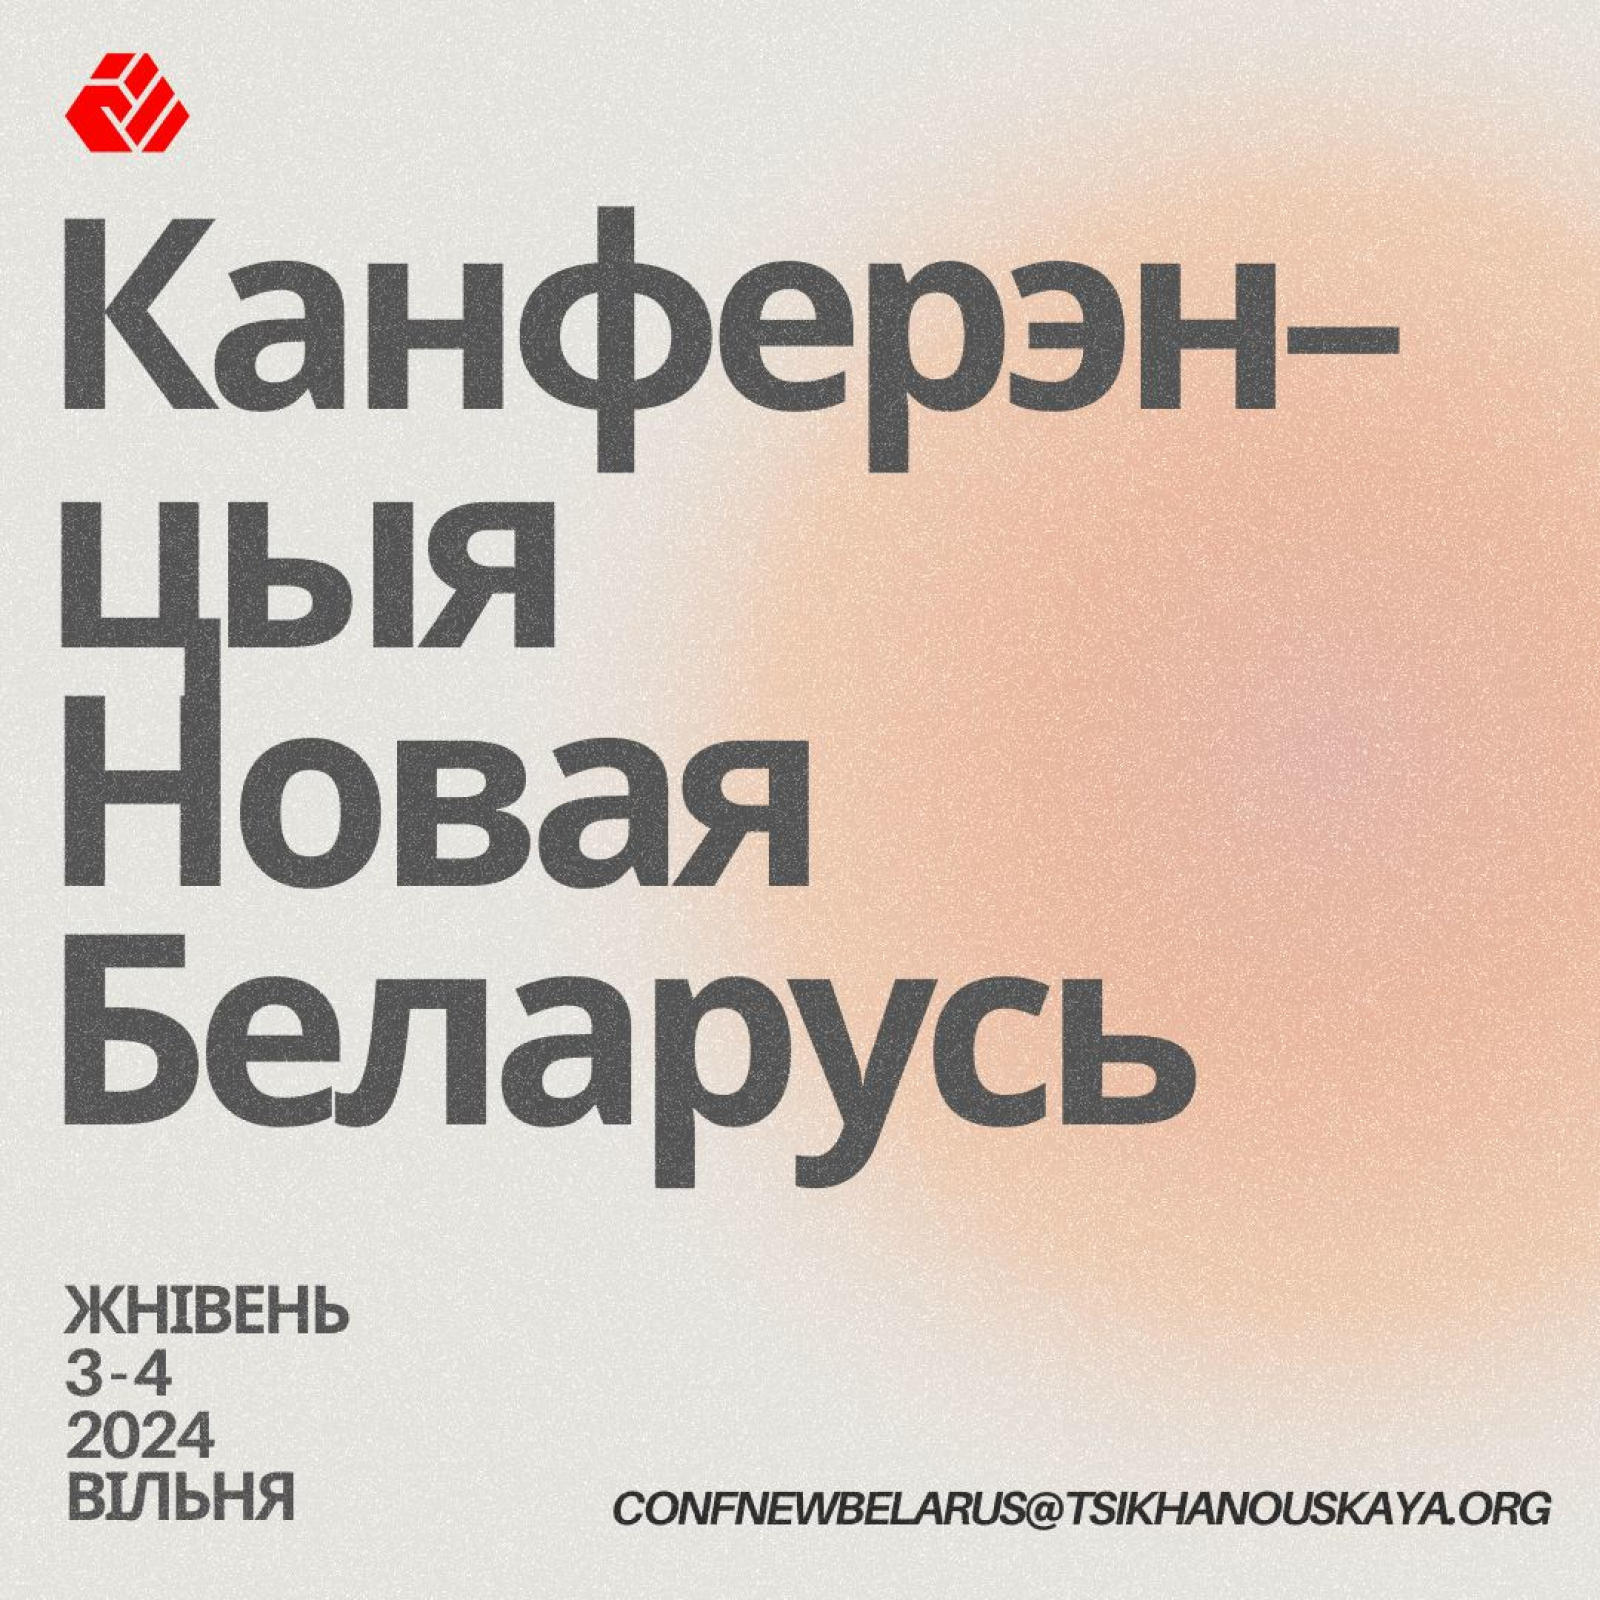 Olga Zazulinskaya will speak at the "New Belarus" Conference in Vilnius.